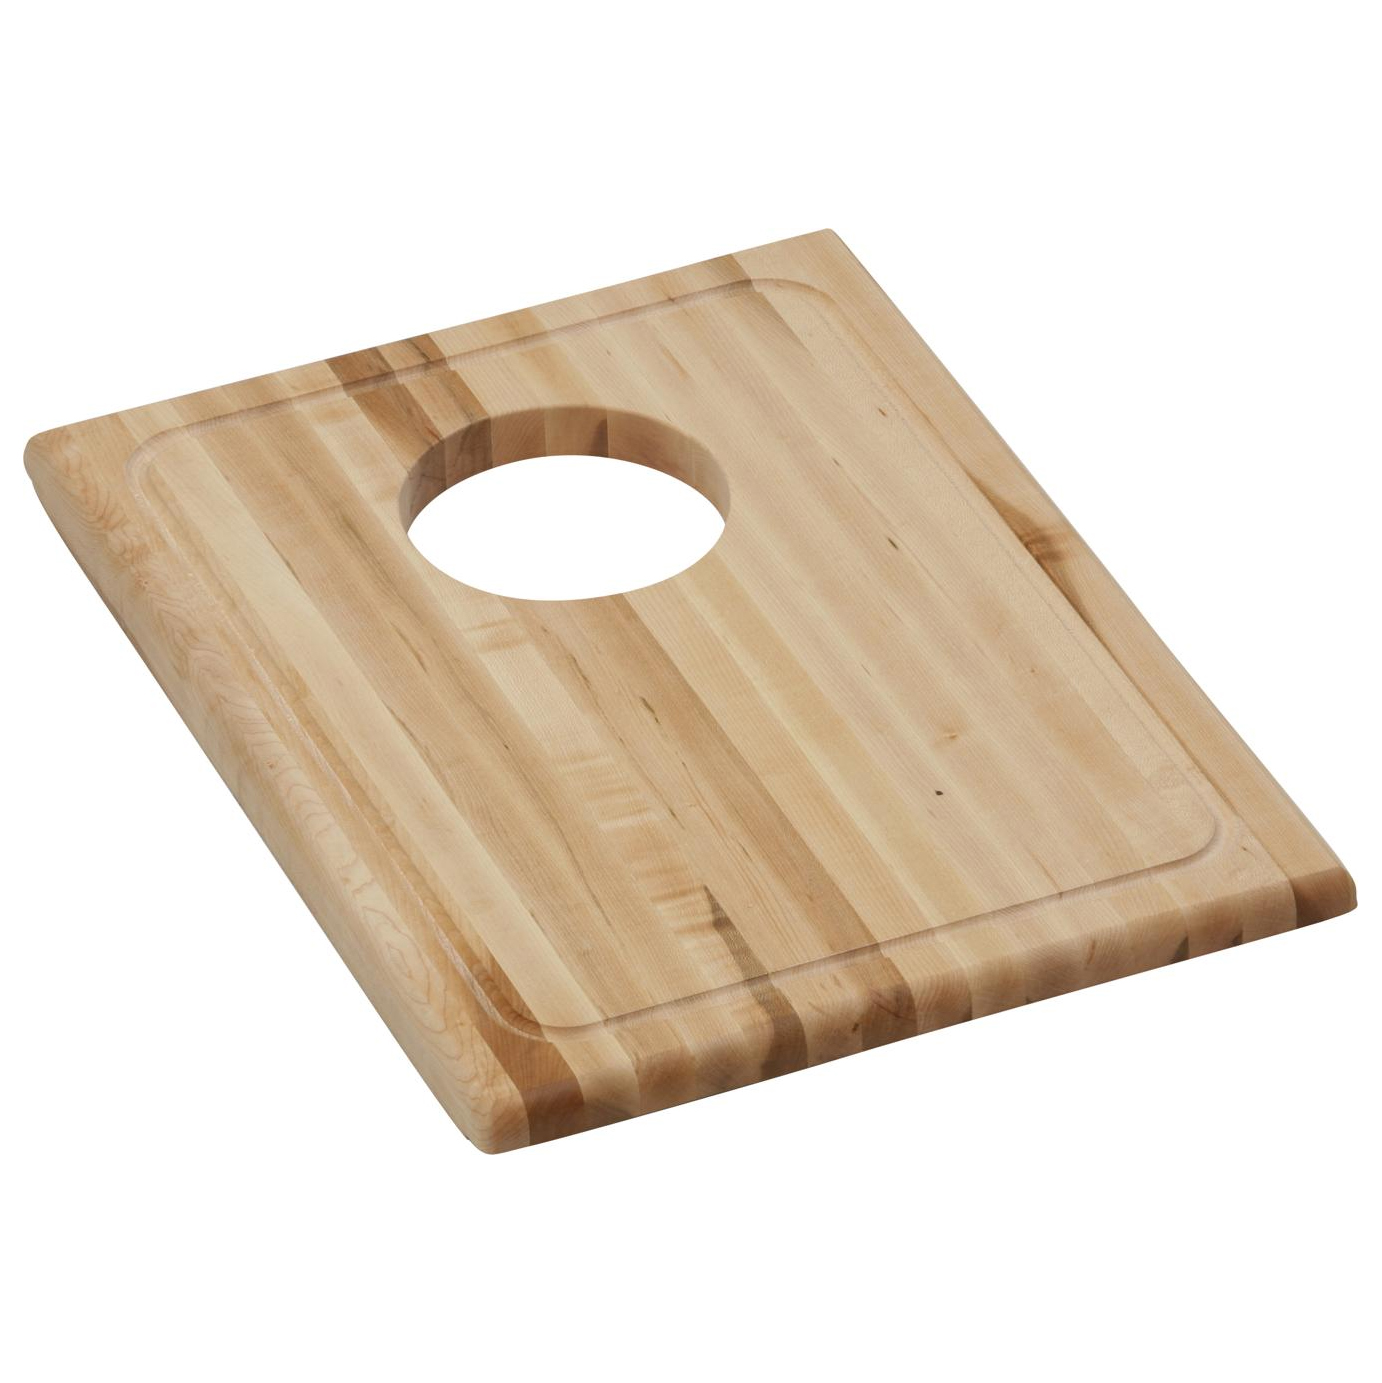 Hardwood 13-3/4x18-3/4x1" Cutting Board